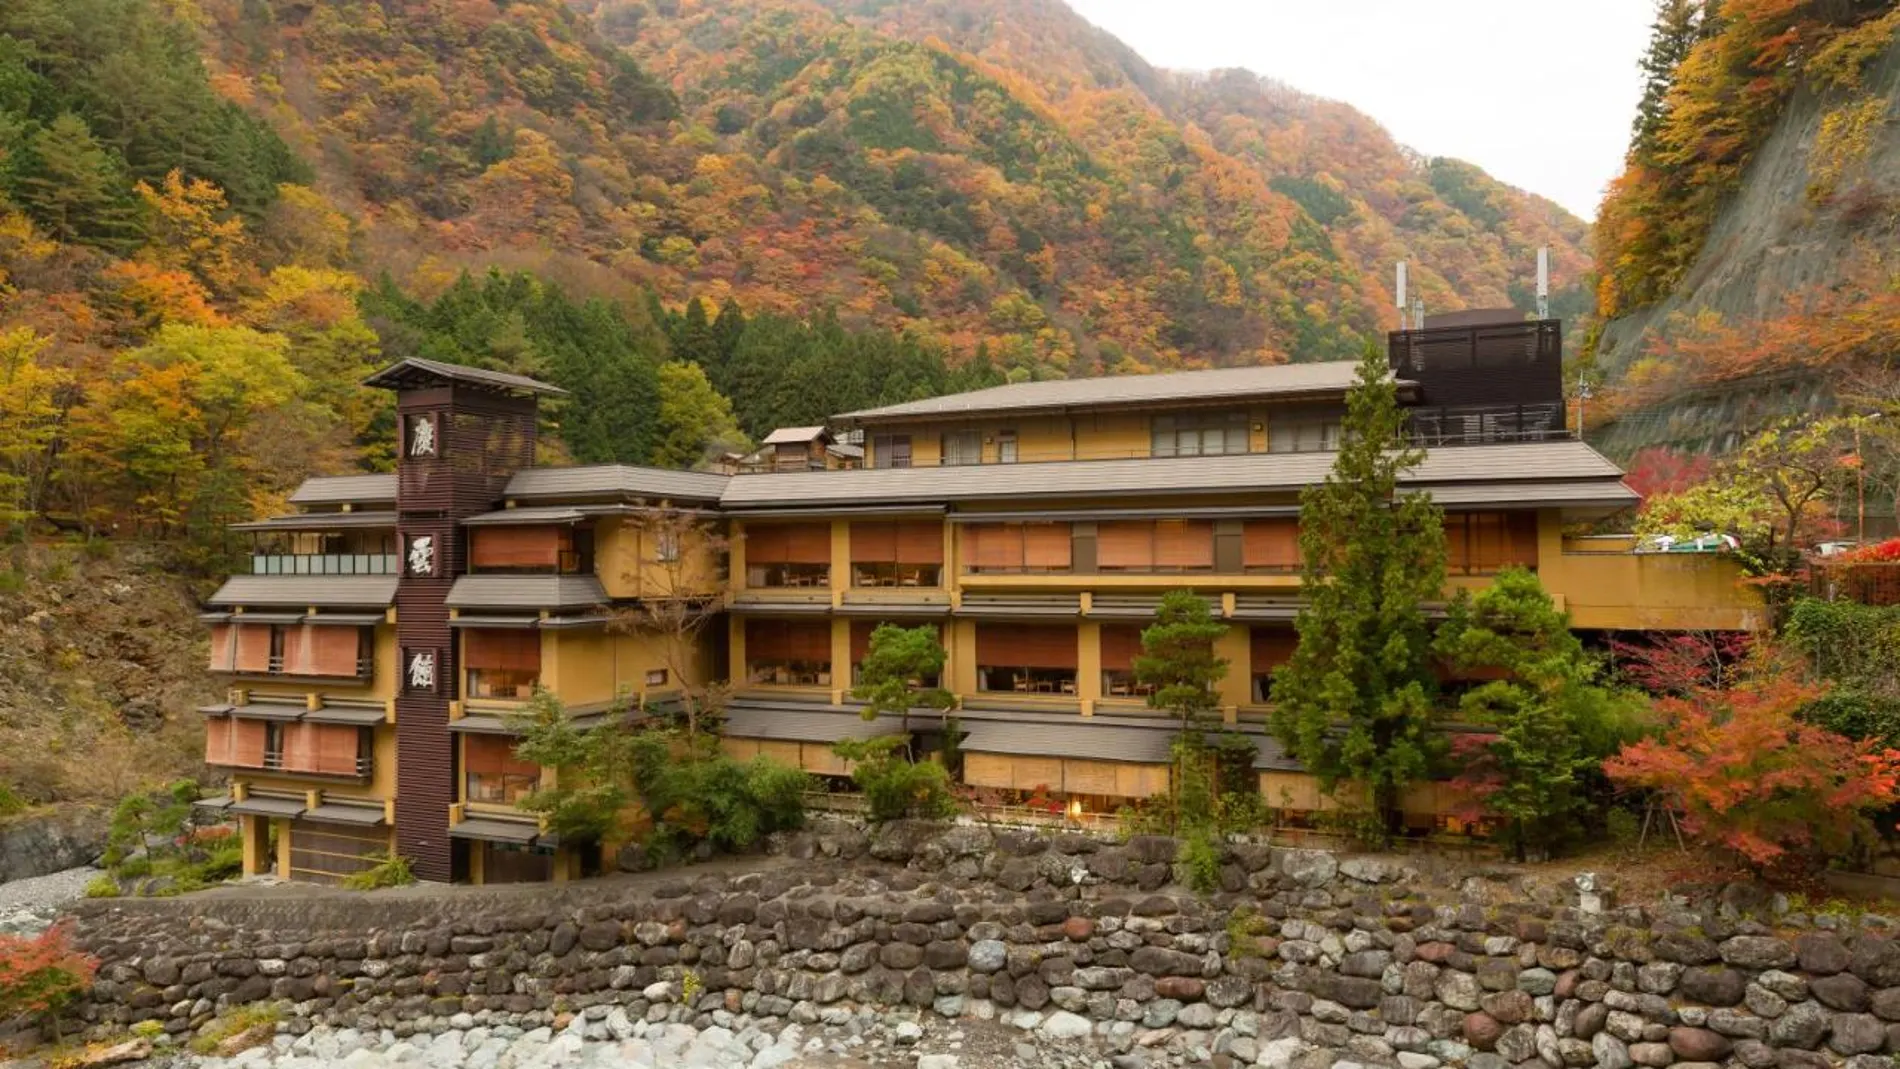 Así es el Nishiyama Onsen Keiunkan, un hotel con más de 1300 años de antigüedad.